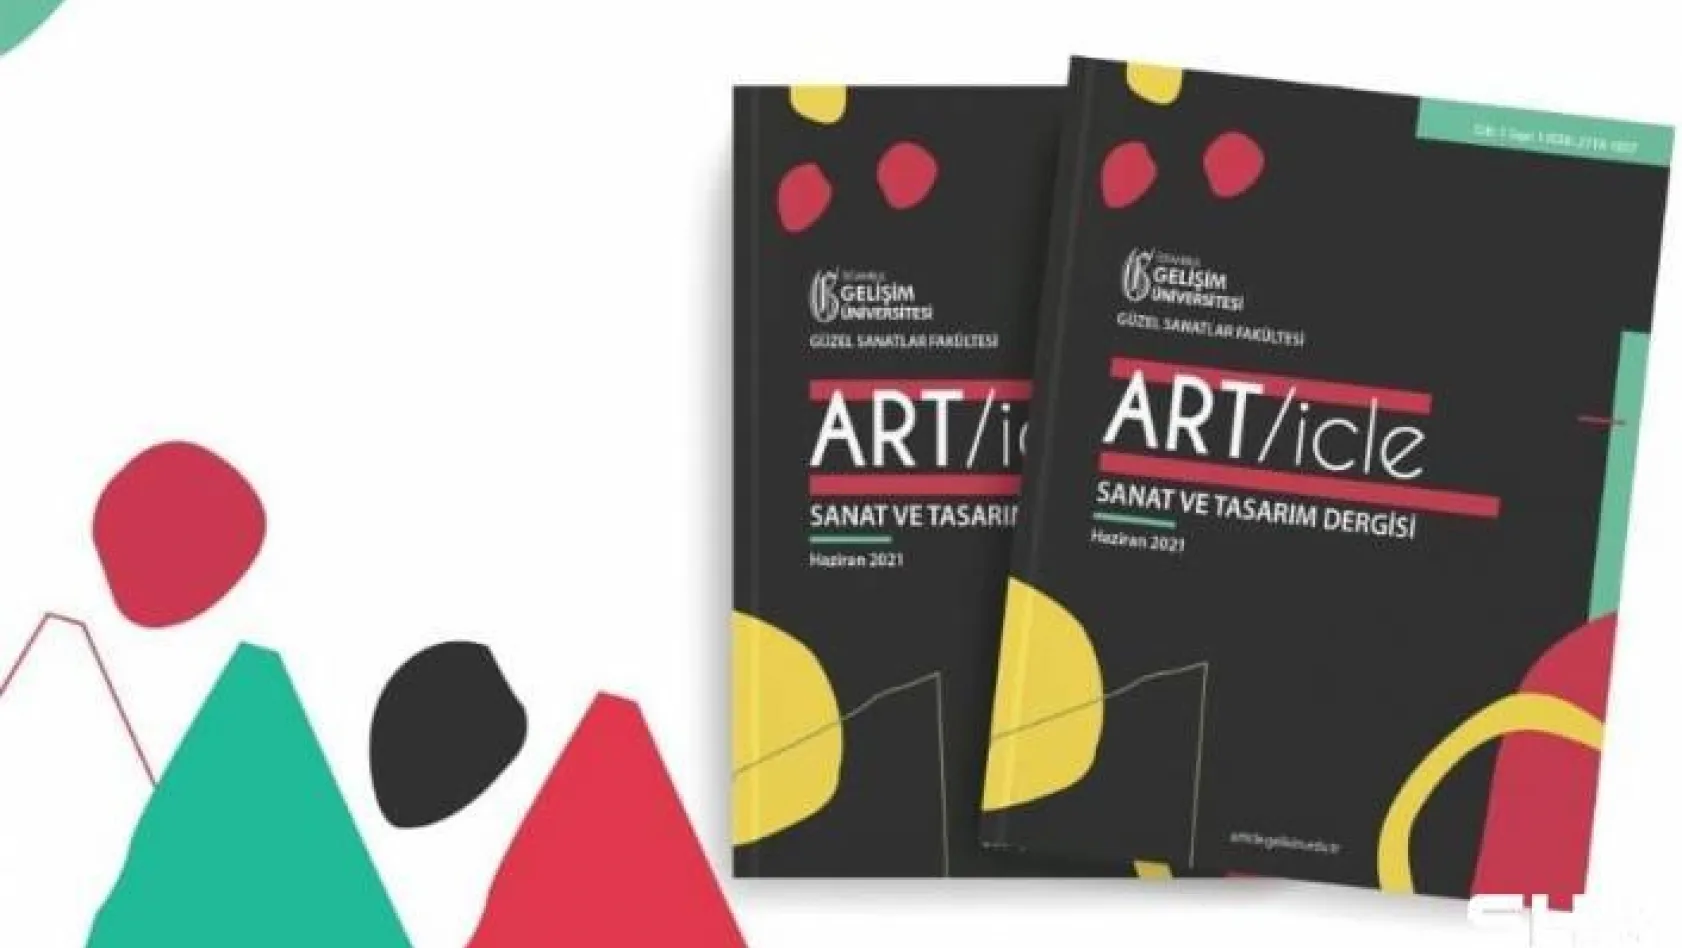 ART/icle: Sanat ve Tasarım Dergisi yayın hayatına başladı